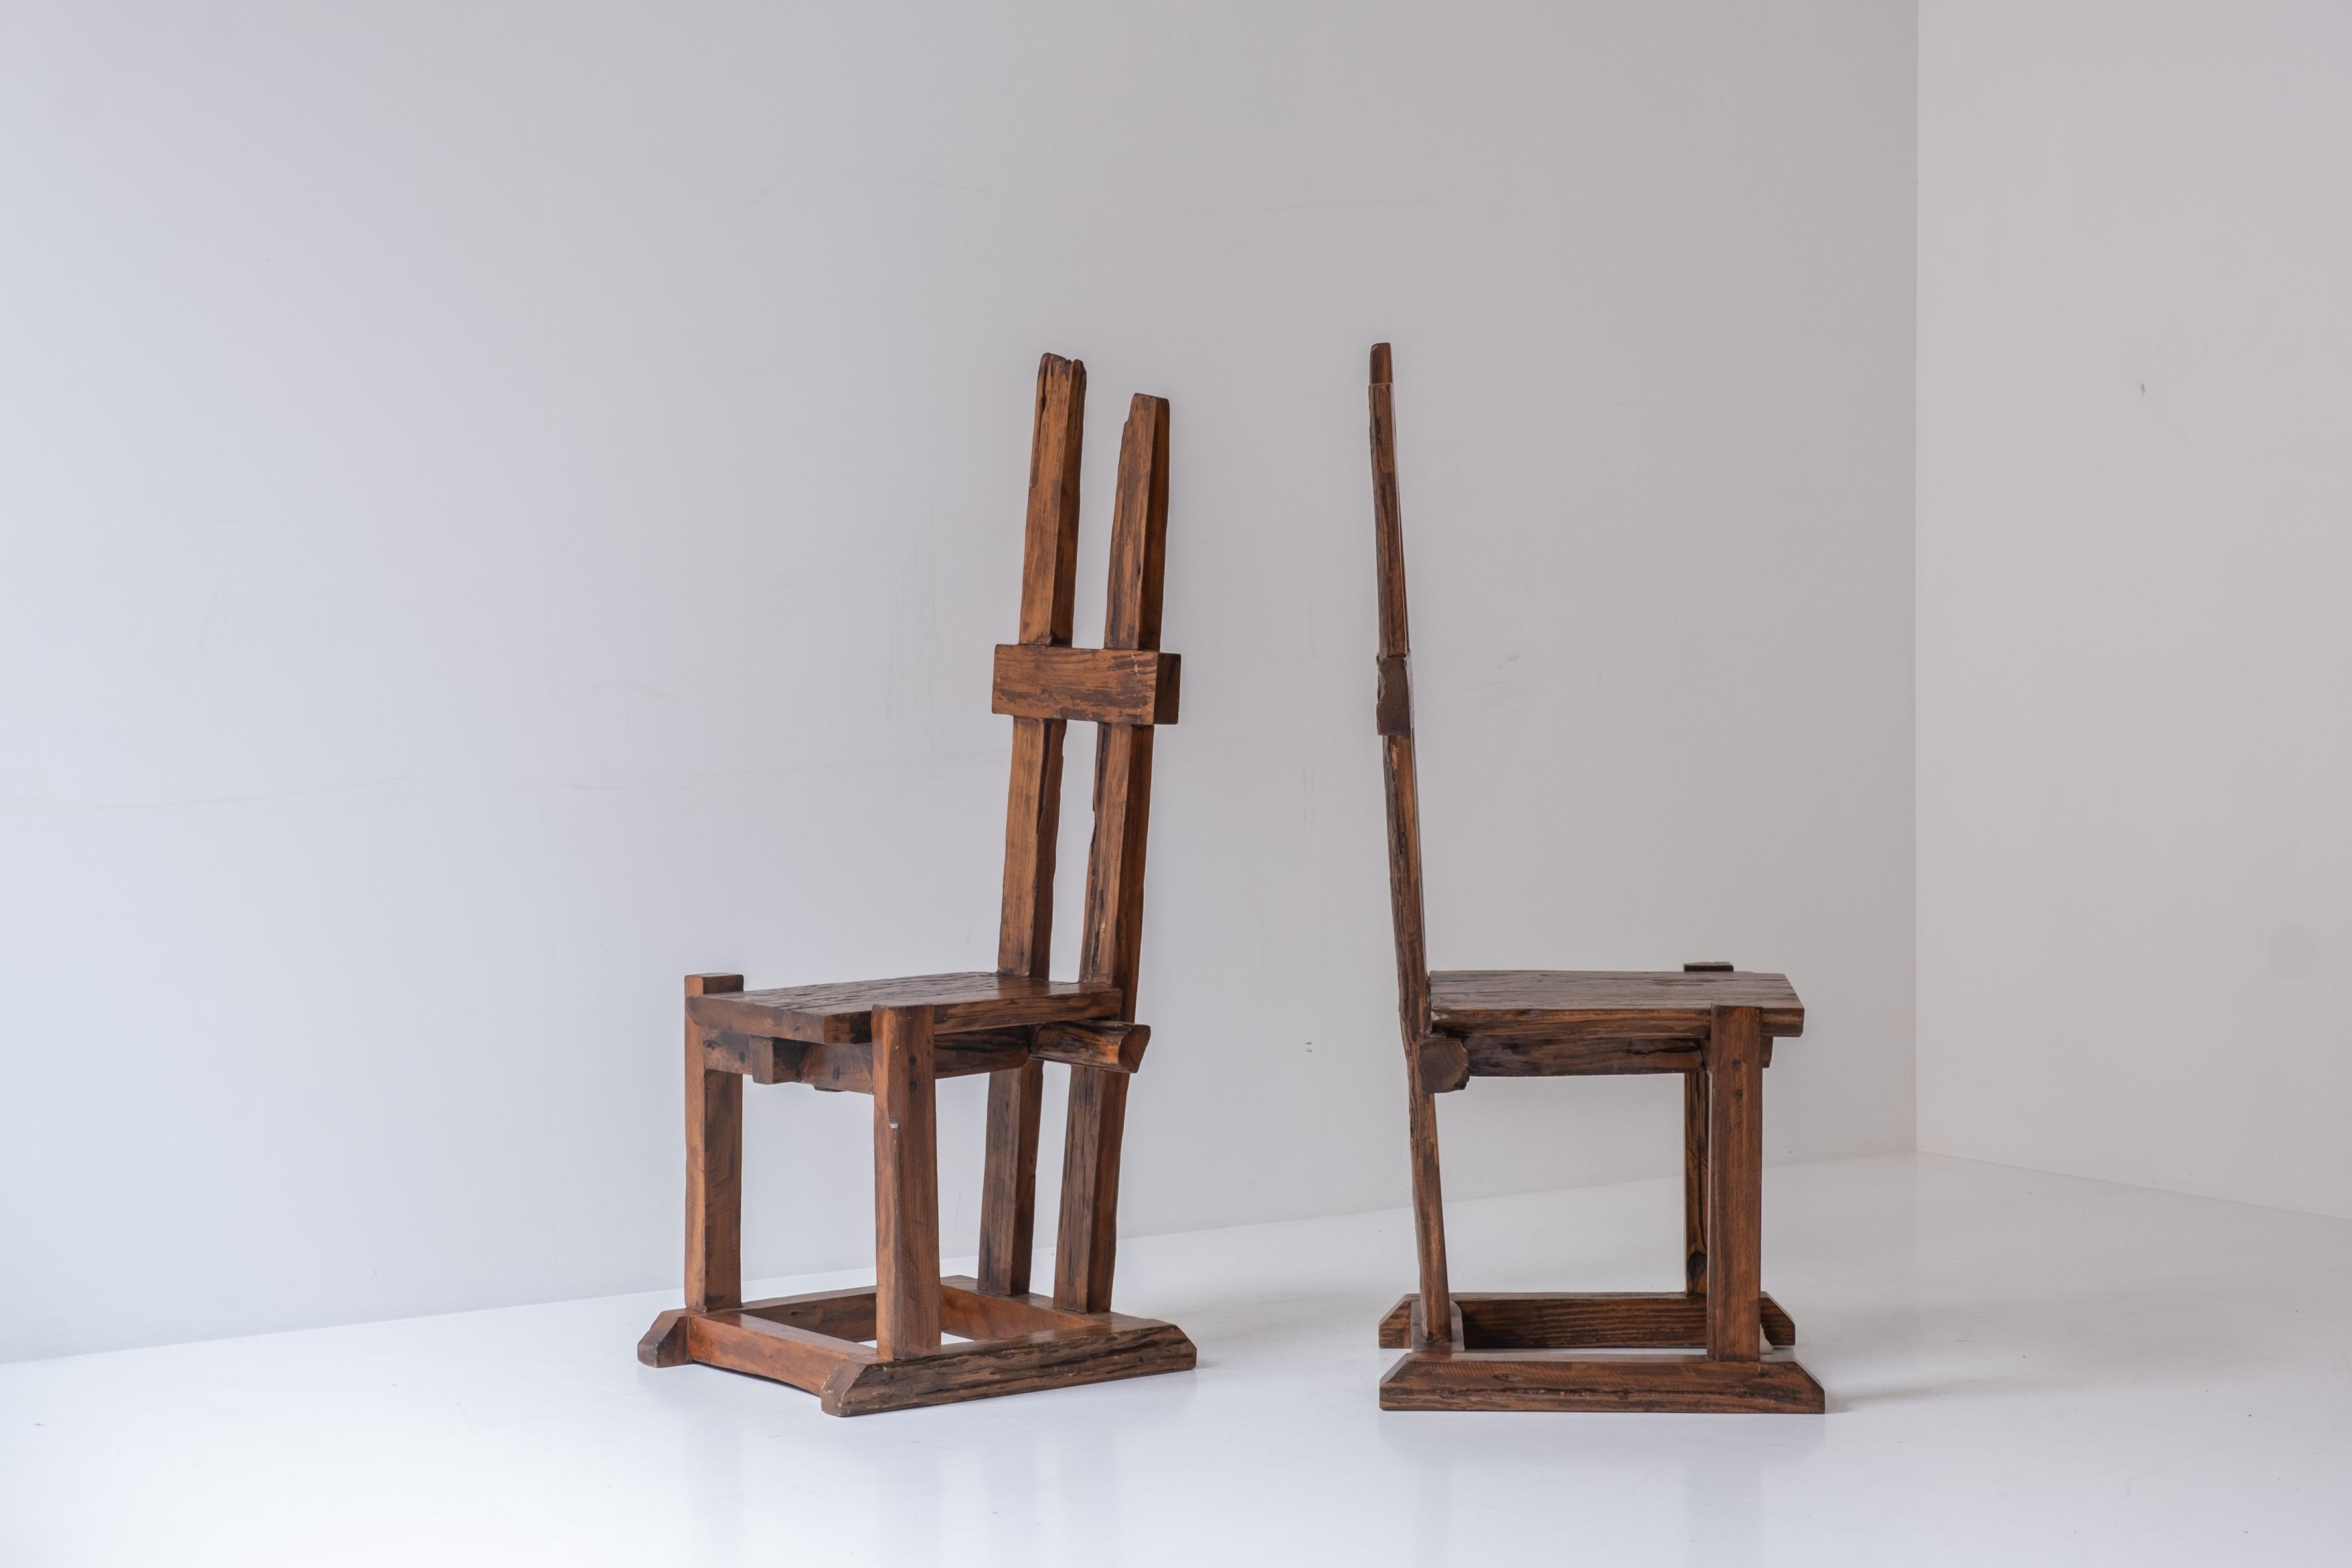 Ein Satz von zwei primitiven Stühlen mit hoher Rückenlehne, entworfen und hergestellt in den 1950er Jahren. Der Kunsthandwerker ließ sich von der Wabi-Sabi-Philosophie inspirieren, in deren Mittelpunkt die Akzeptanz von Vergänglichkeit und